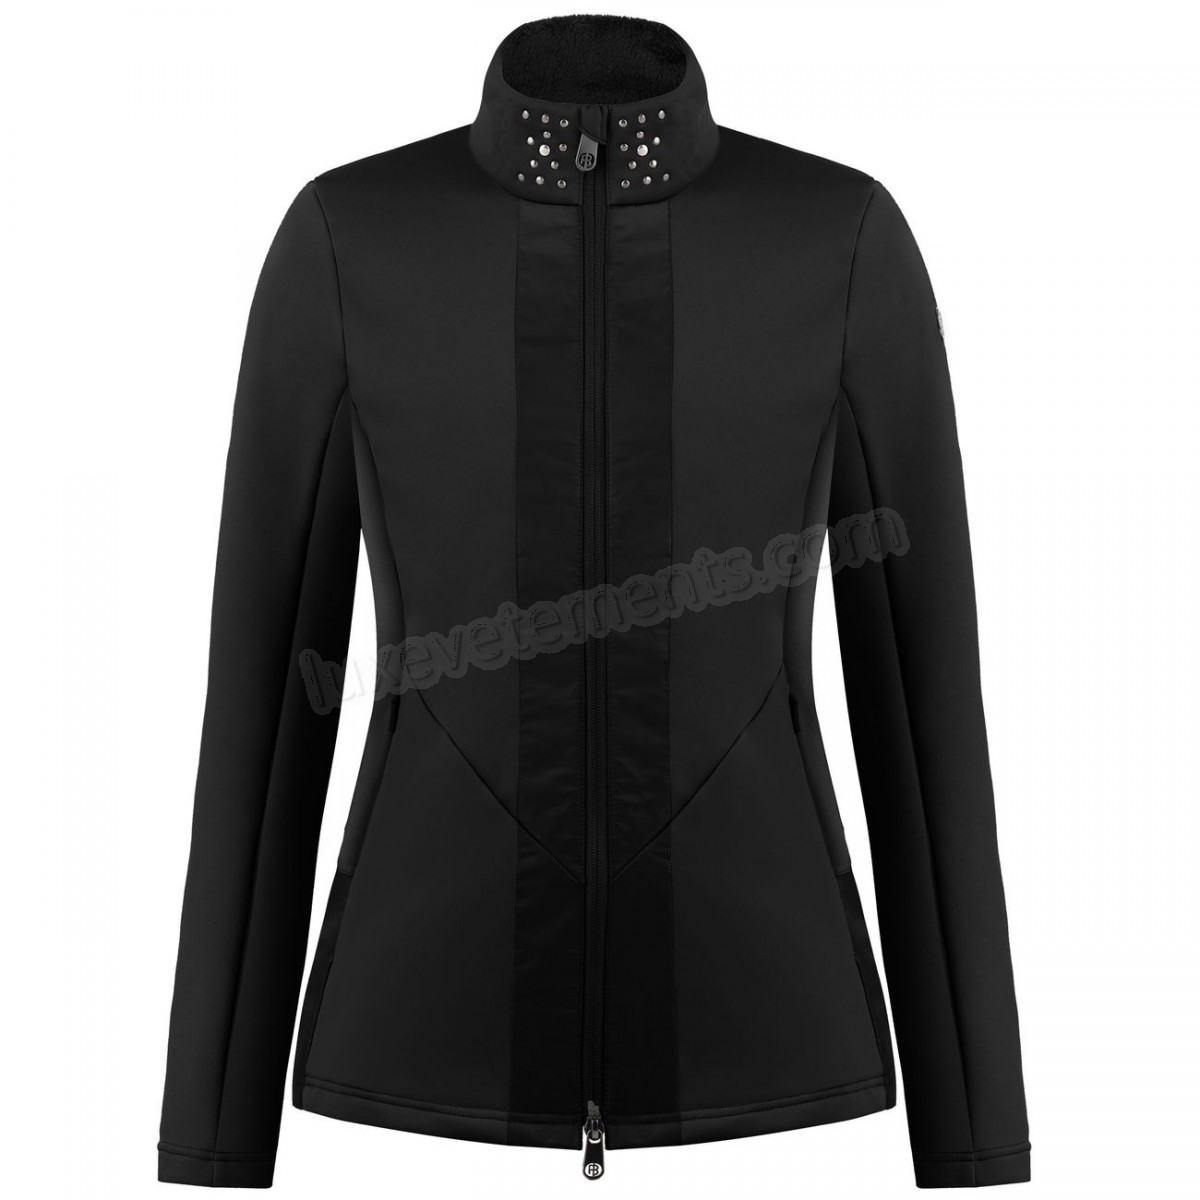 Poivre Blanc-Sports d'hiver femme POIVRE BLANC Veste En Polaire Poivre Blanc Hybrid Stretch Fleece Jacket 1702 Black Femme Vente en ligne - -1